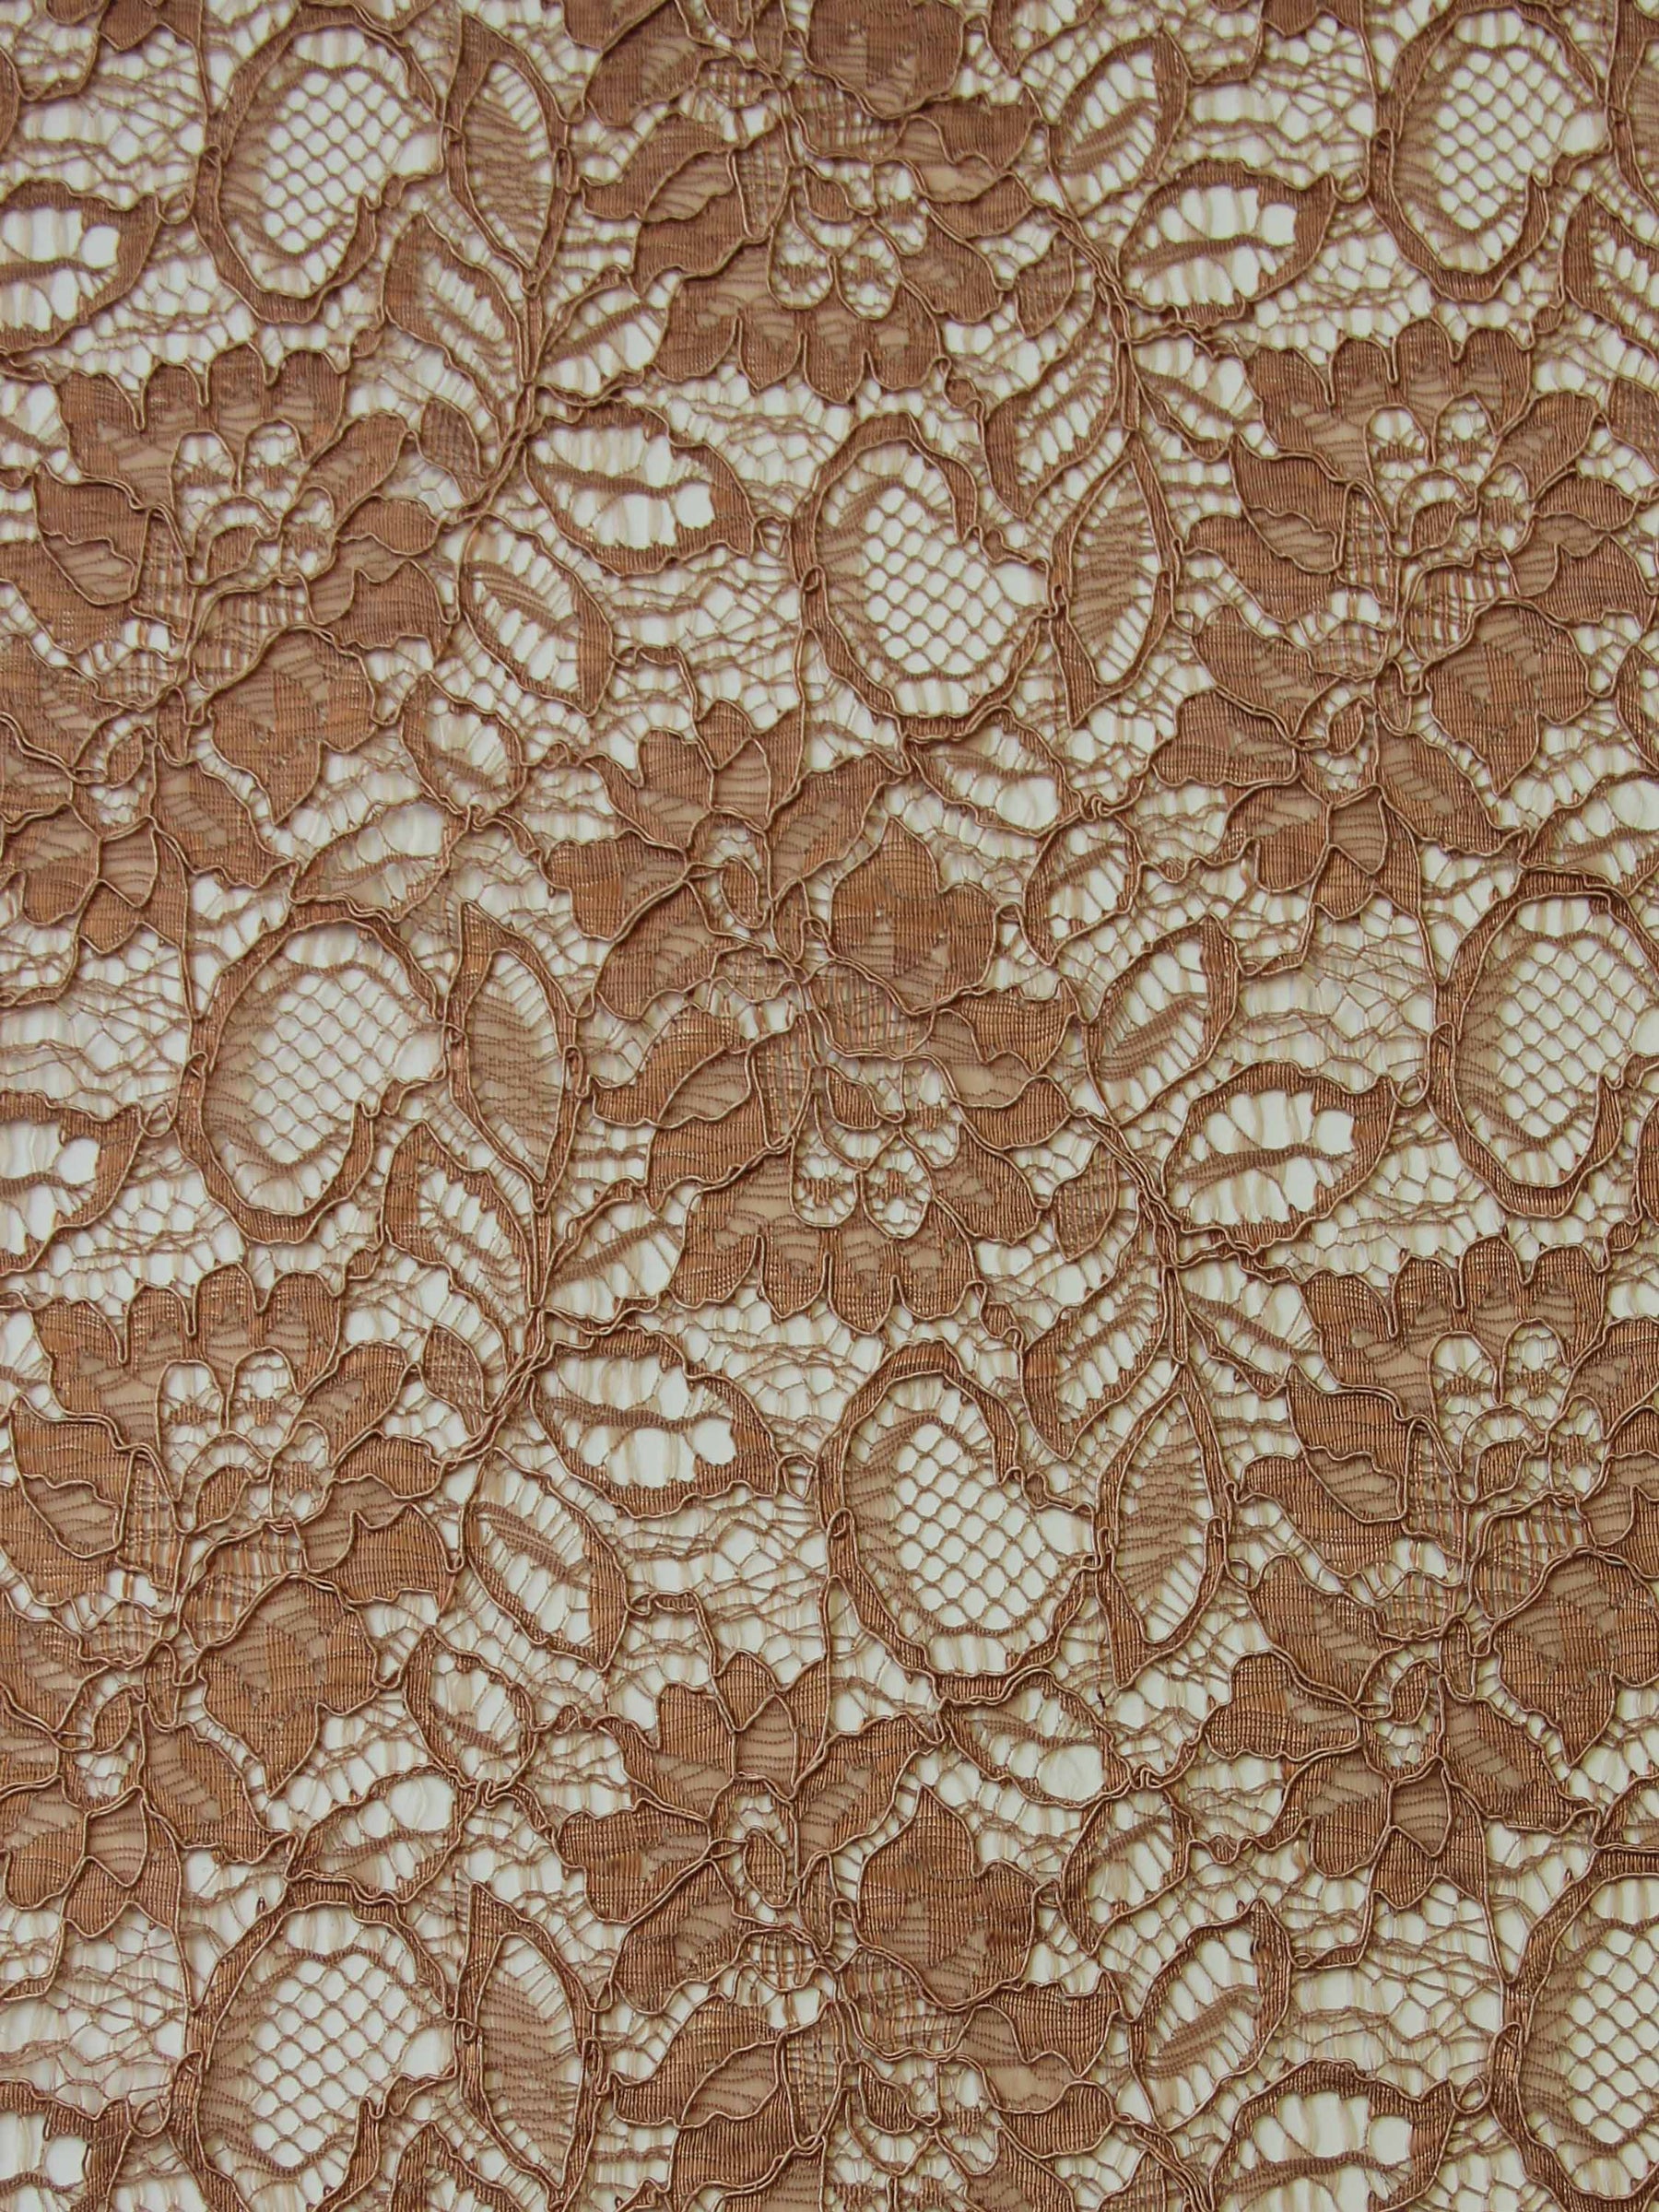 Nylon Corded Soft Cream Lace Fabric